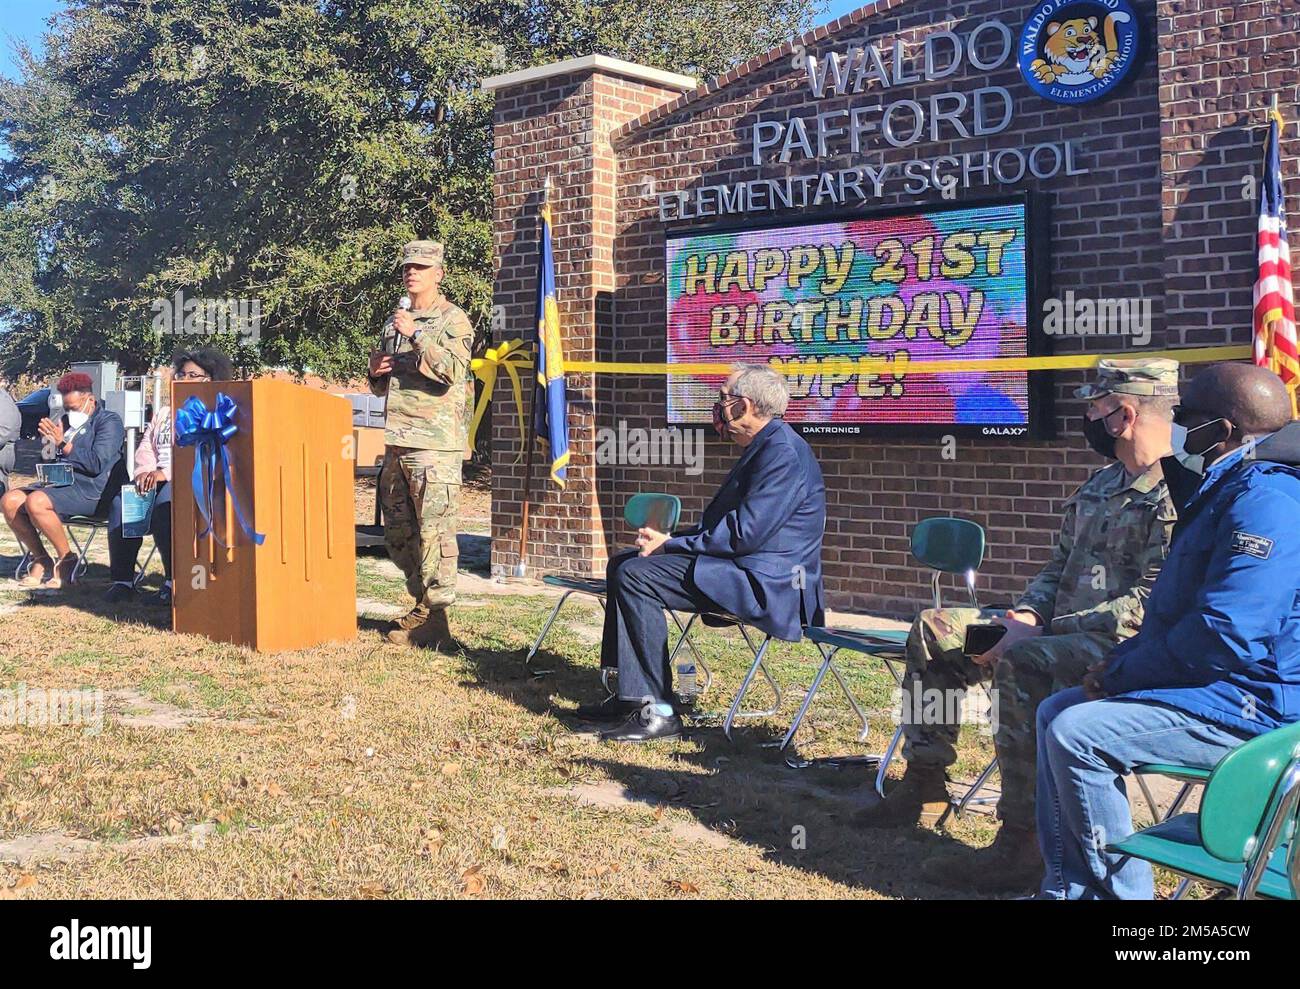 Fort Stewart-Hunter Army Airfield Garrison Commander, col. Manny Ramirez, parla durante la celebrazione del 21st° compleanno della scuola elementare Waldo Pafford, il 14 febbraio a Hinesville. (Foto di Jenny Walker) Foto Stock